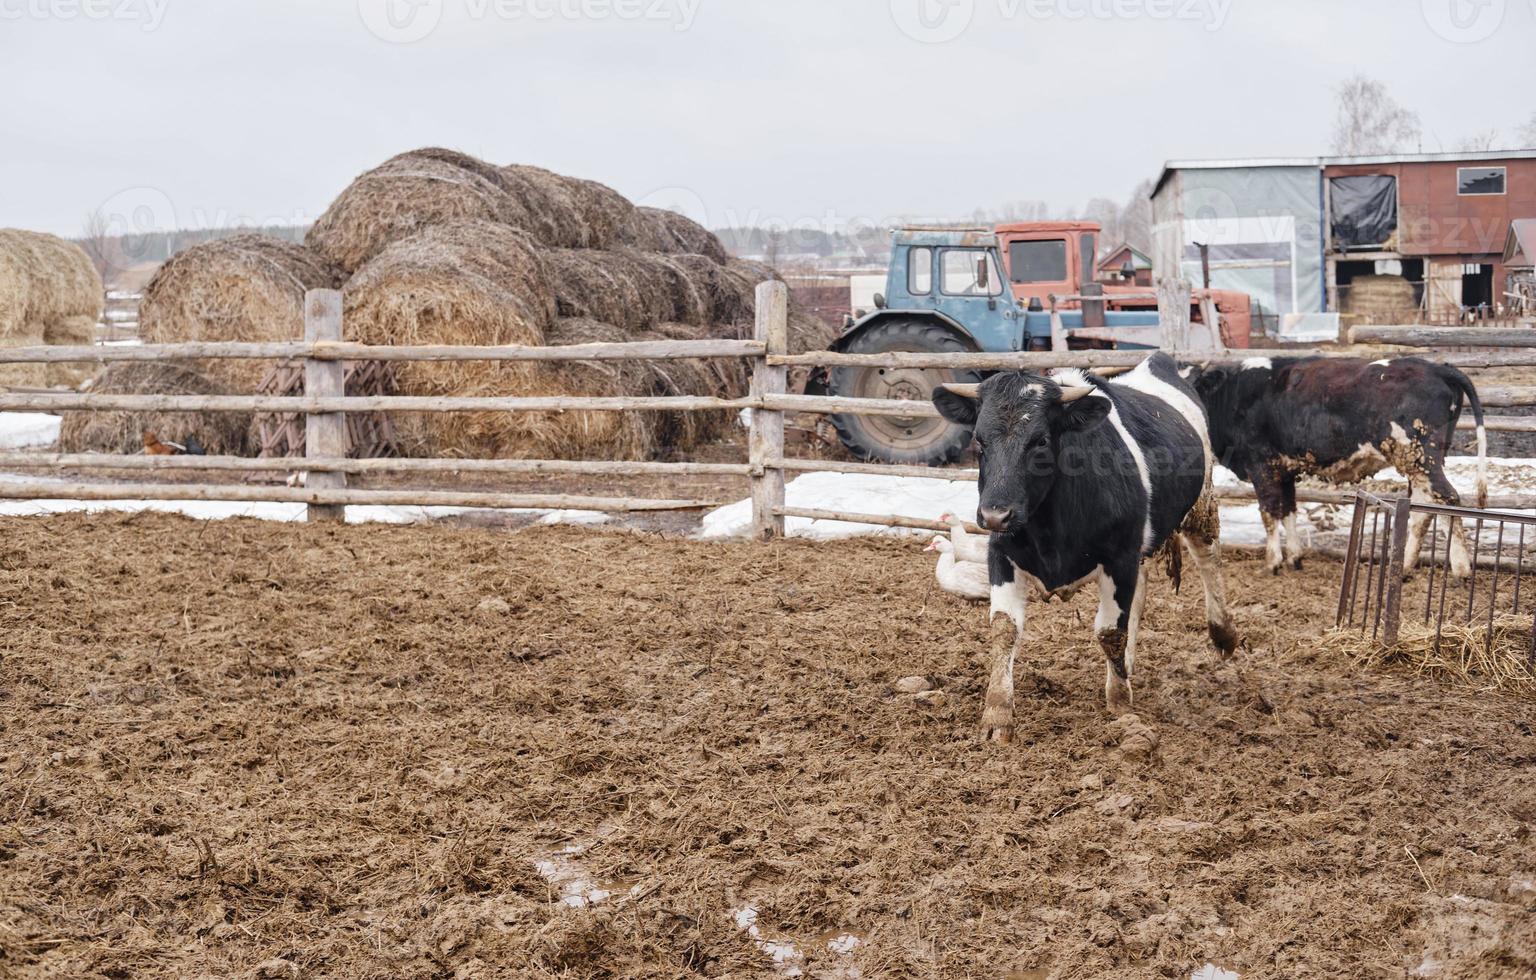 vacas blancas y negras en el barro de la granja mirando la cámara foto